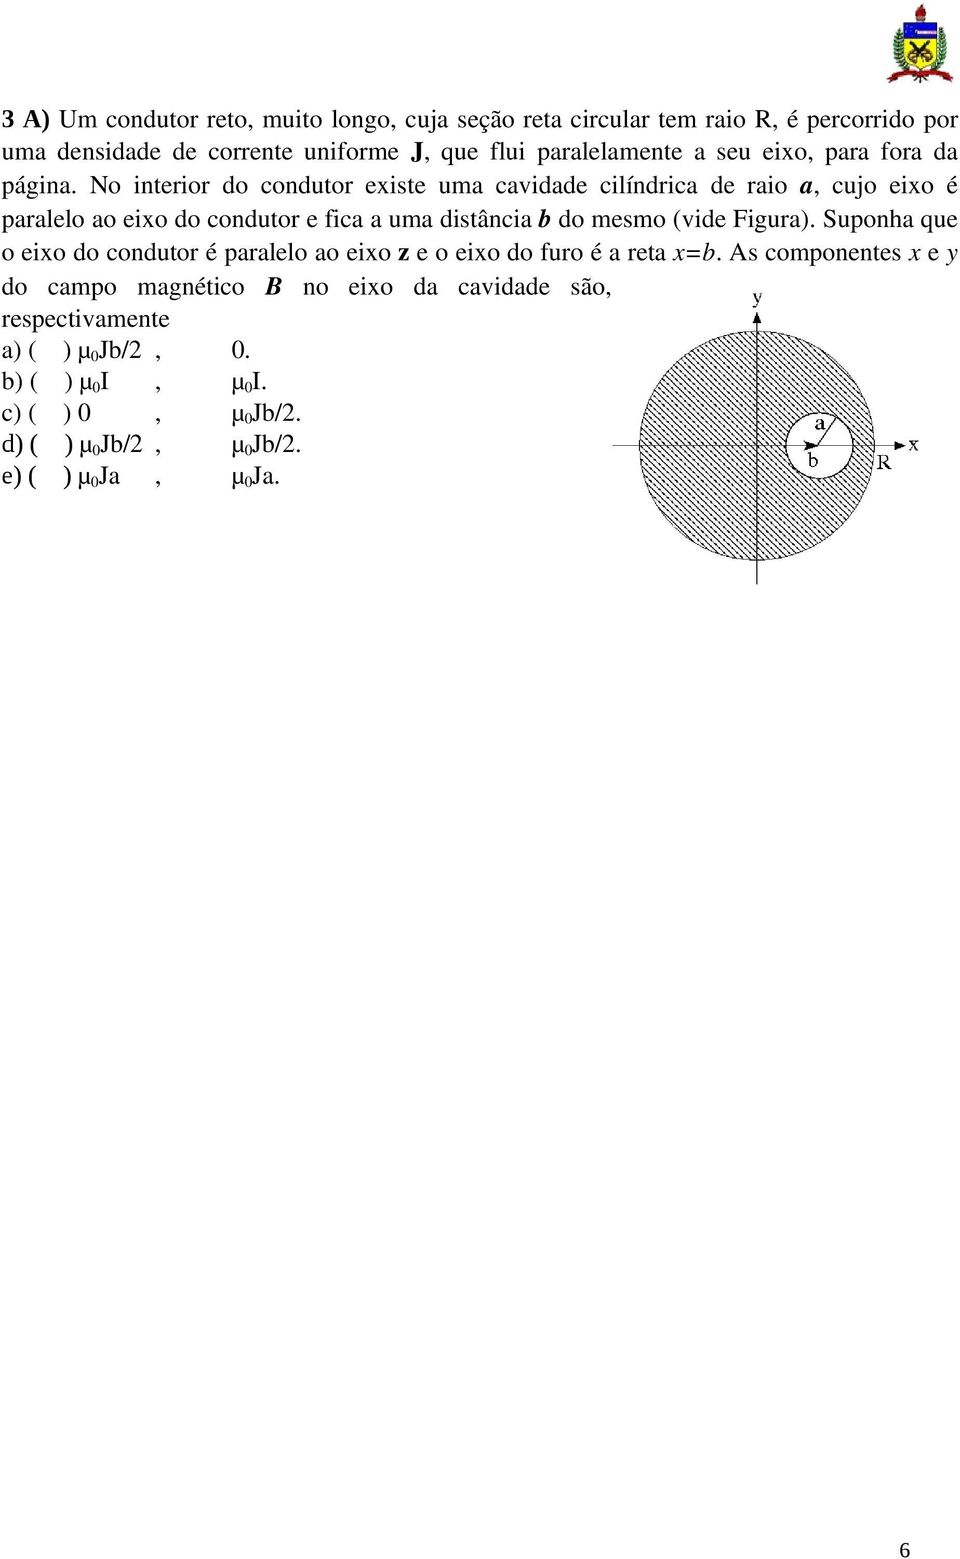 distância b do mesmo (vide Figura) Suponha que o eixo do condutor é paralelo ao eixo z e o eixo do furo é a reta x=b As componentes x e y do campo